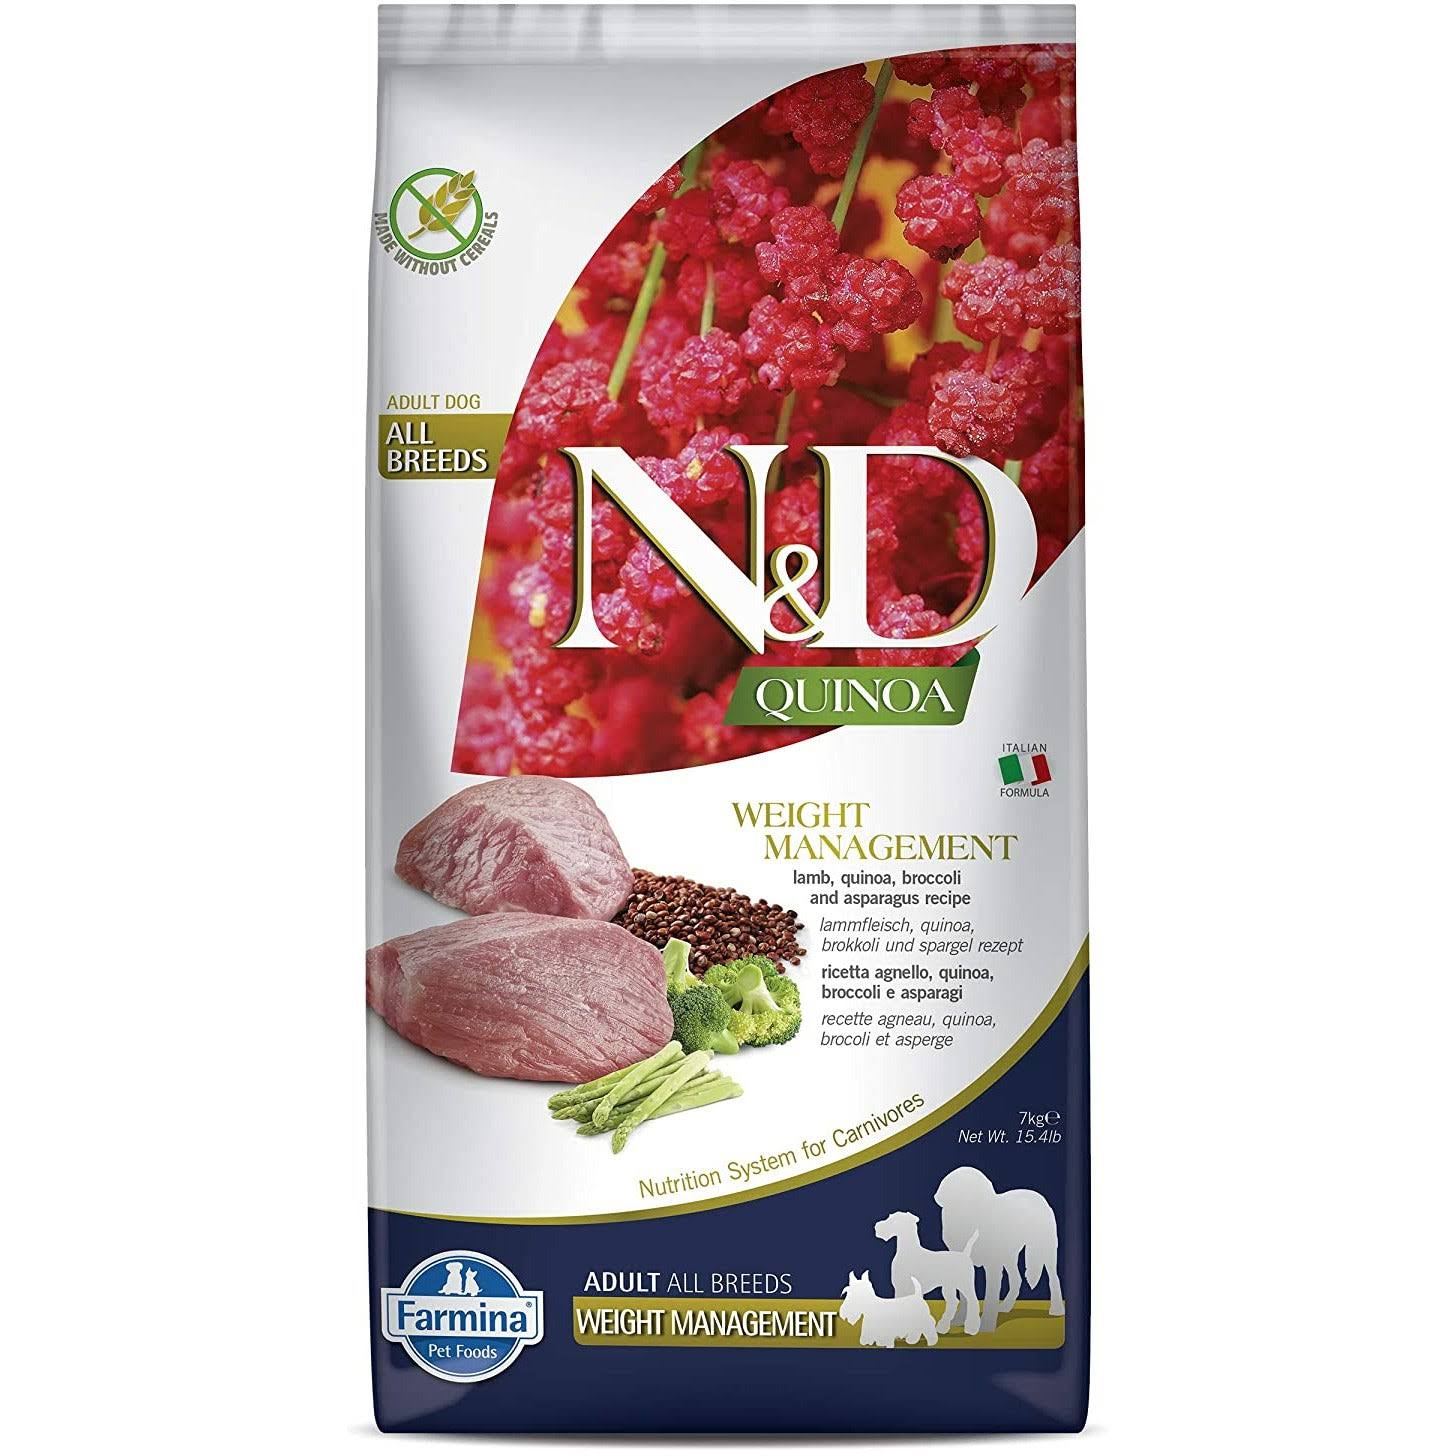 Farmina N&D Quinoa Weight Management Lamb Dog Food - 15.4 lbs.